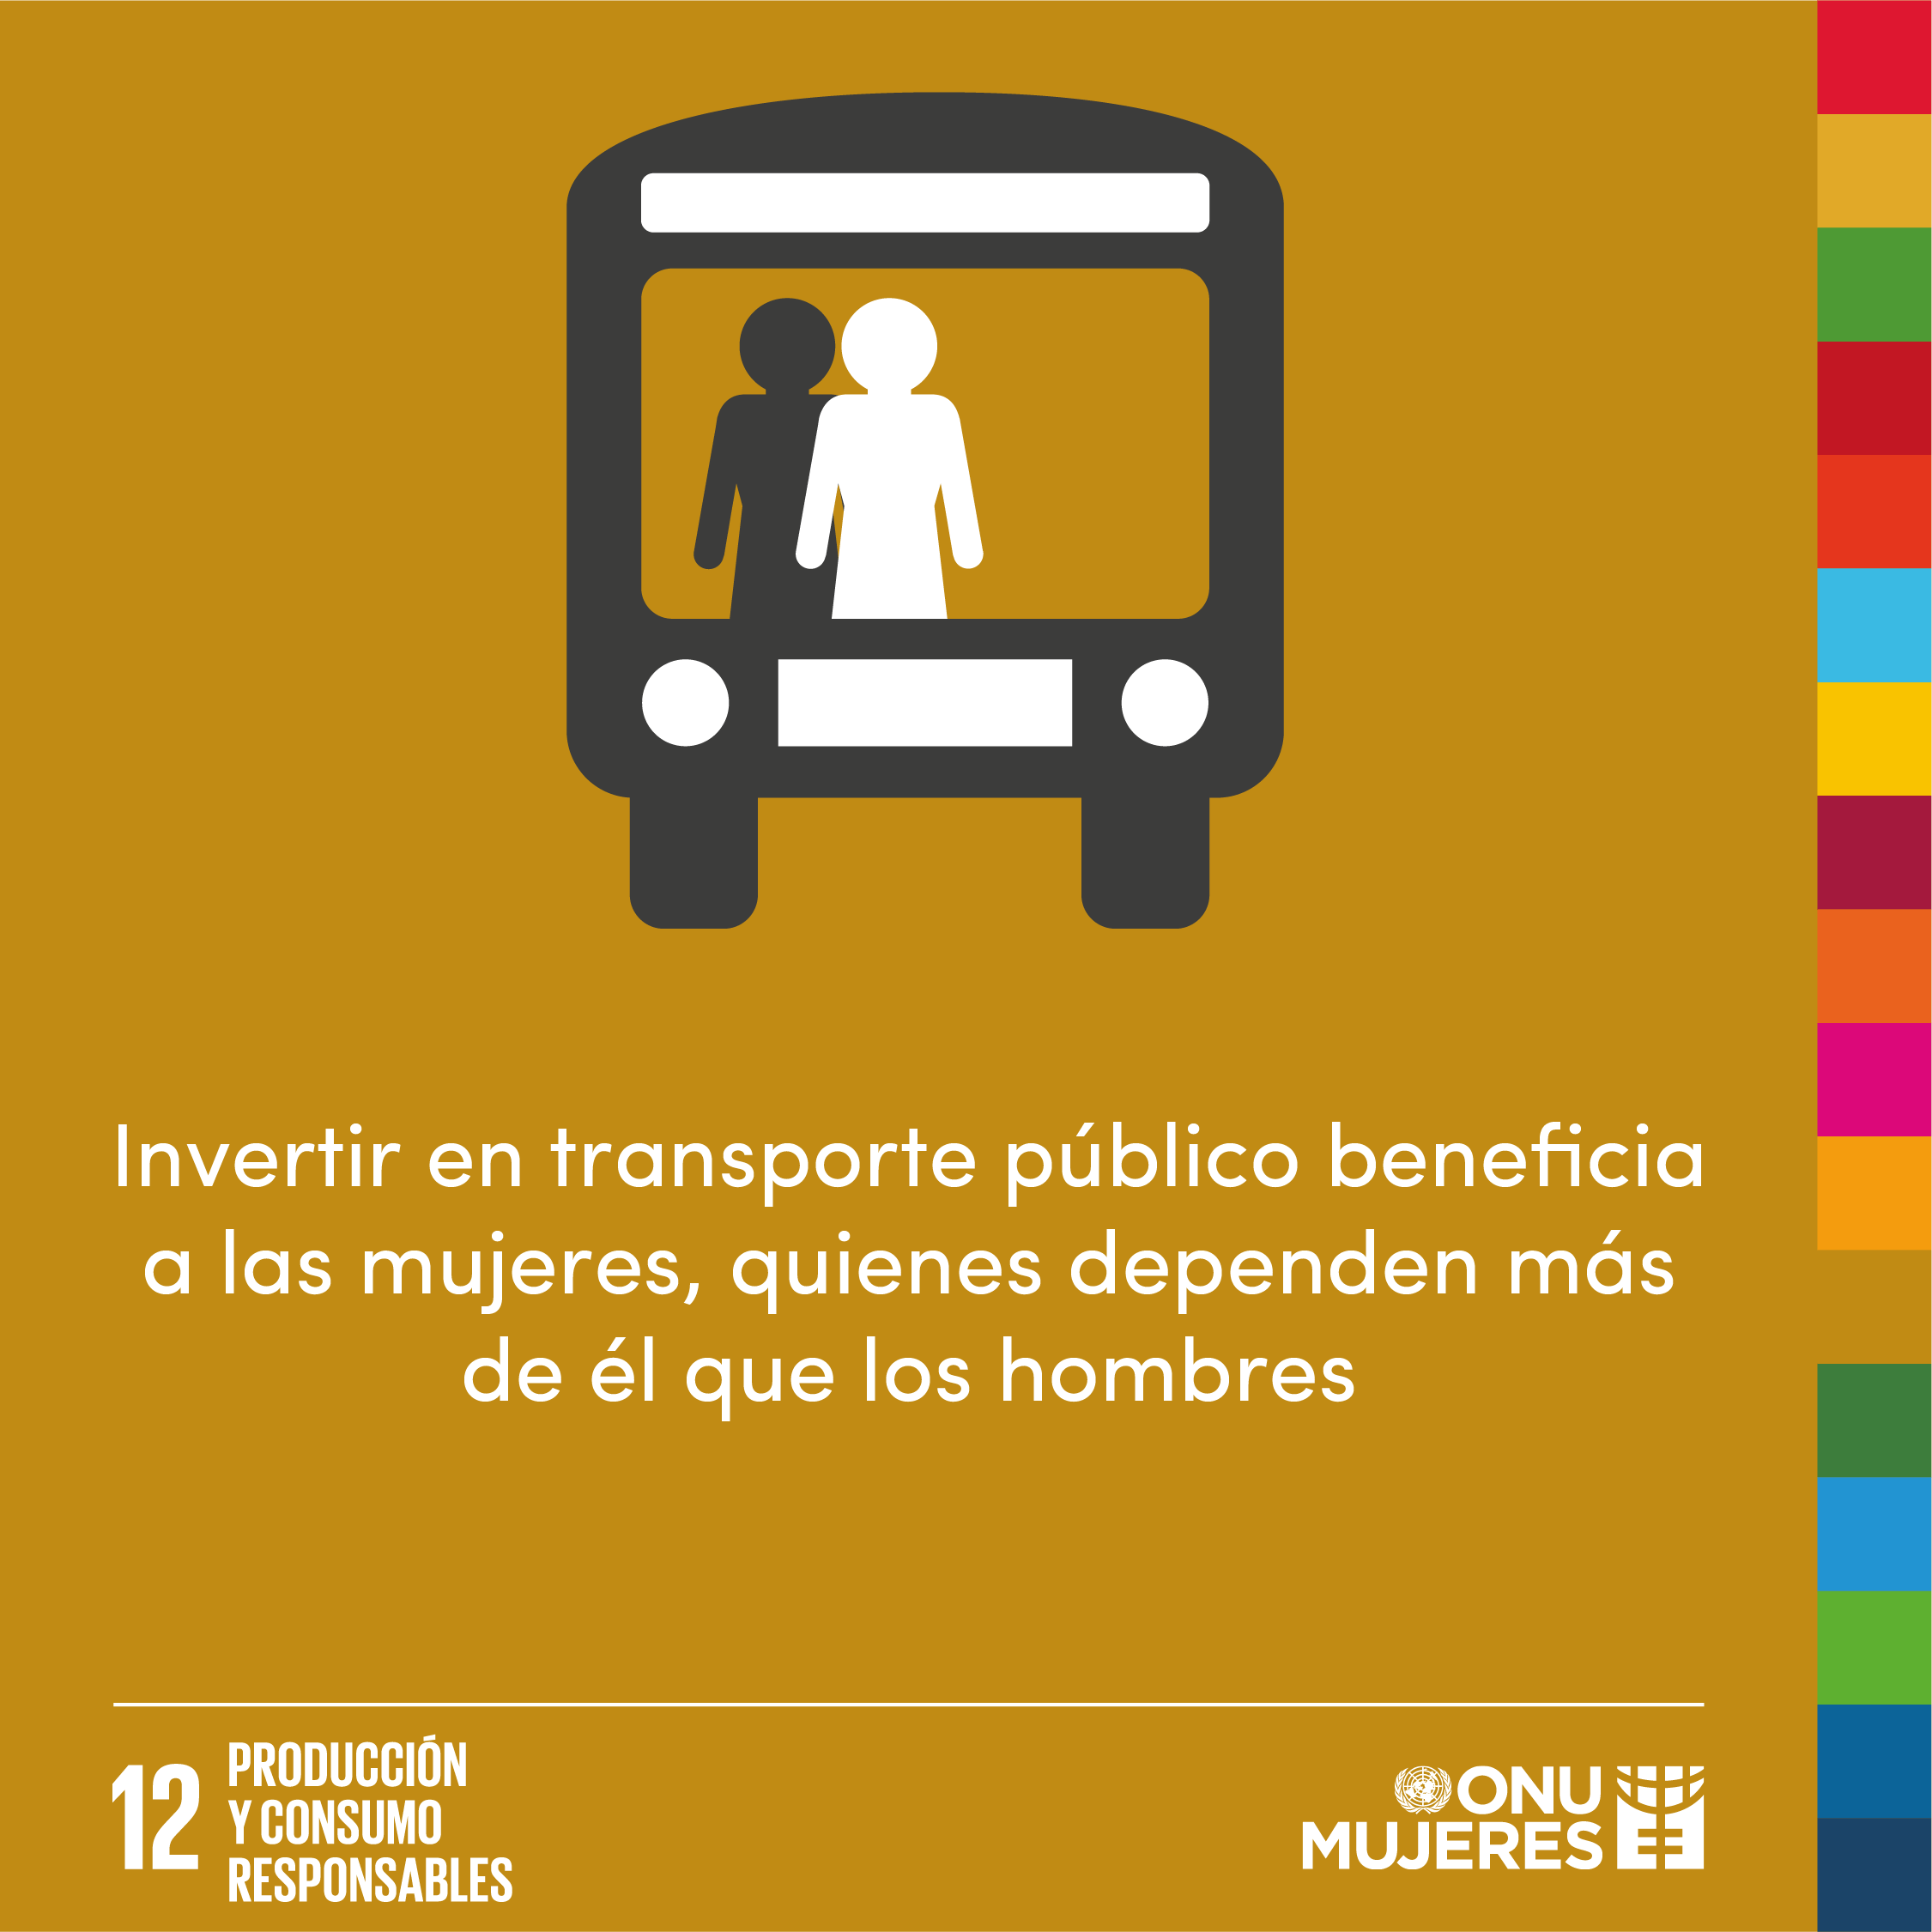 Invertir en transporte público beneficia a las mujeres, quienes dependen más de él que los hombres.